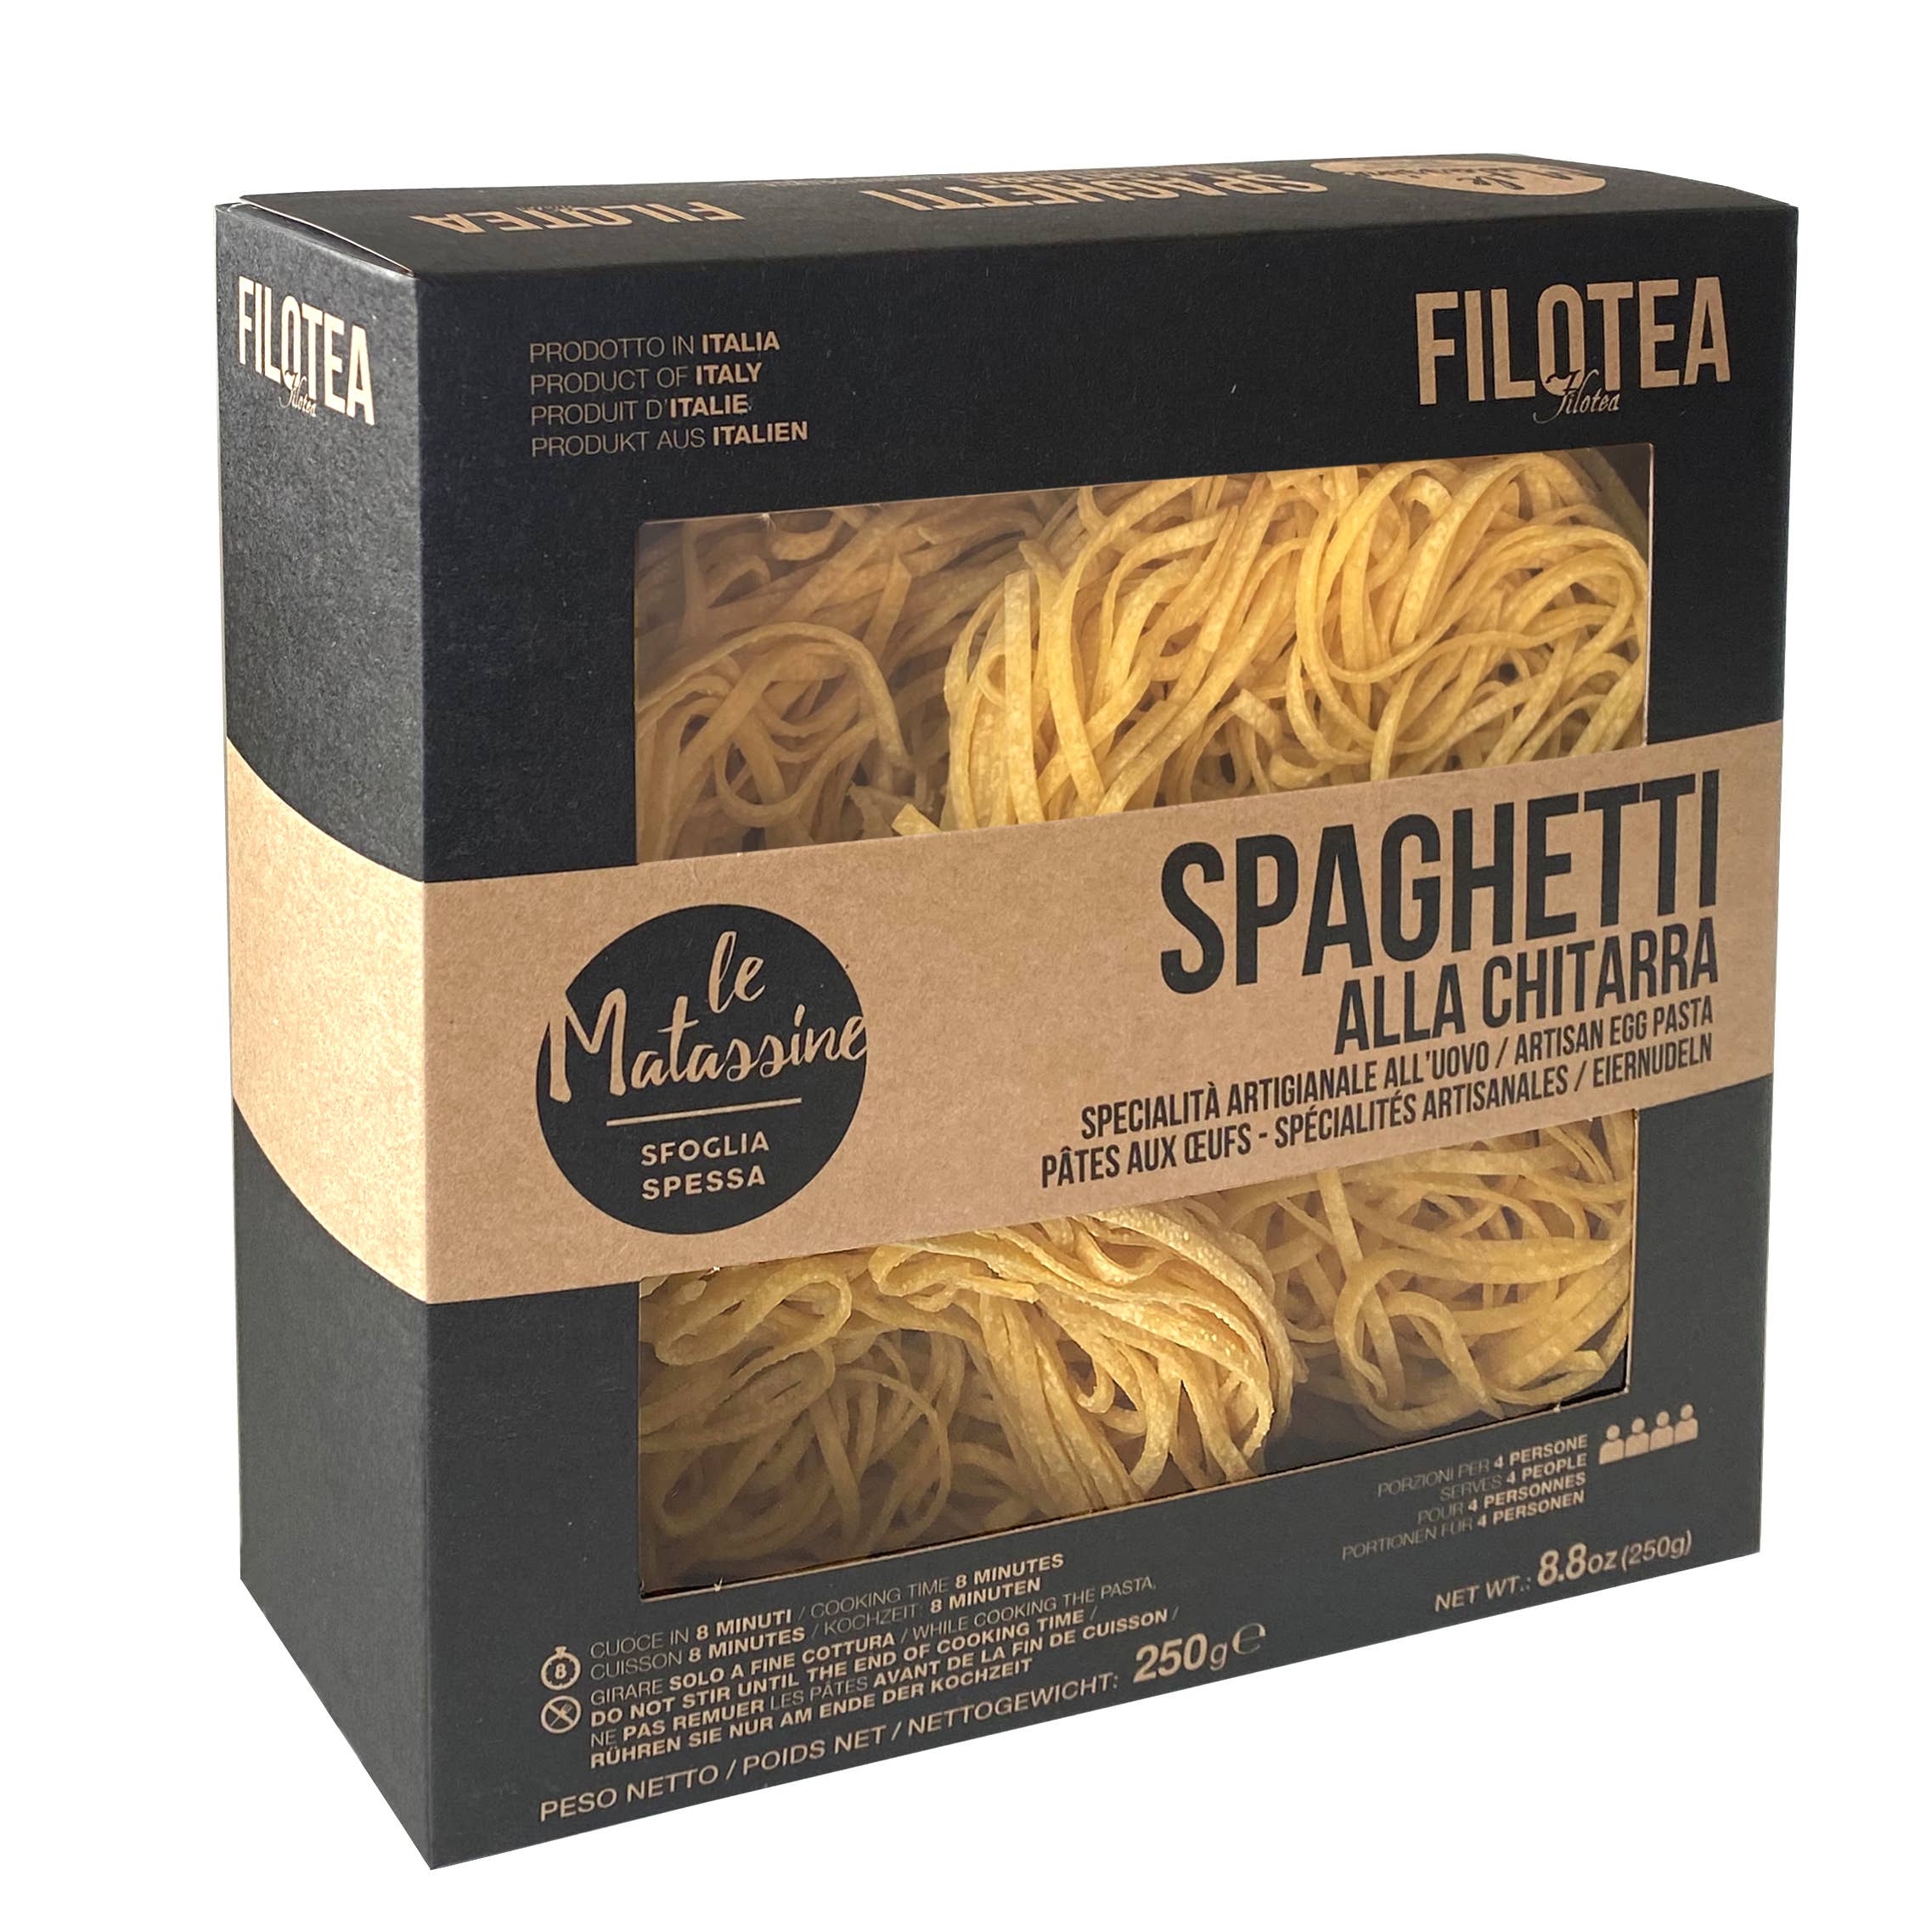 Wholesale Filotea • Matassine Spaghetti Alla Chitarra Nest Egg 250g for your  store - Faire